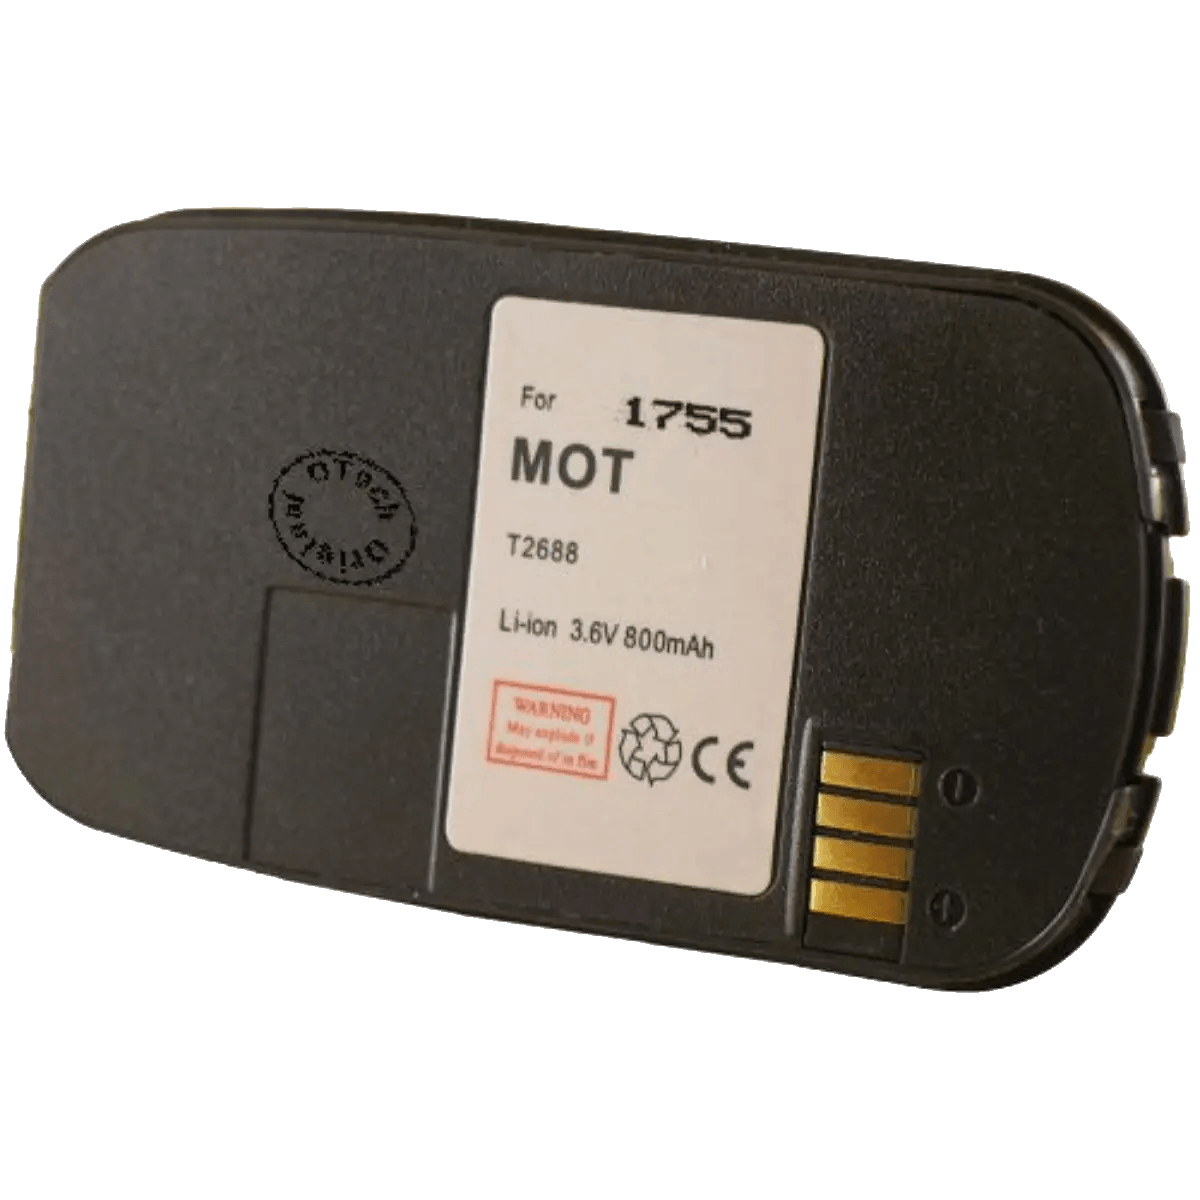 Batterie pour téléphone portable Motorola T205, T2688, T2689, T2988